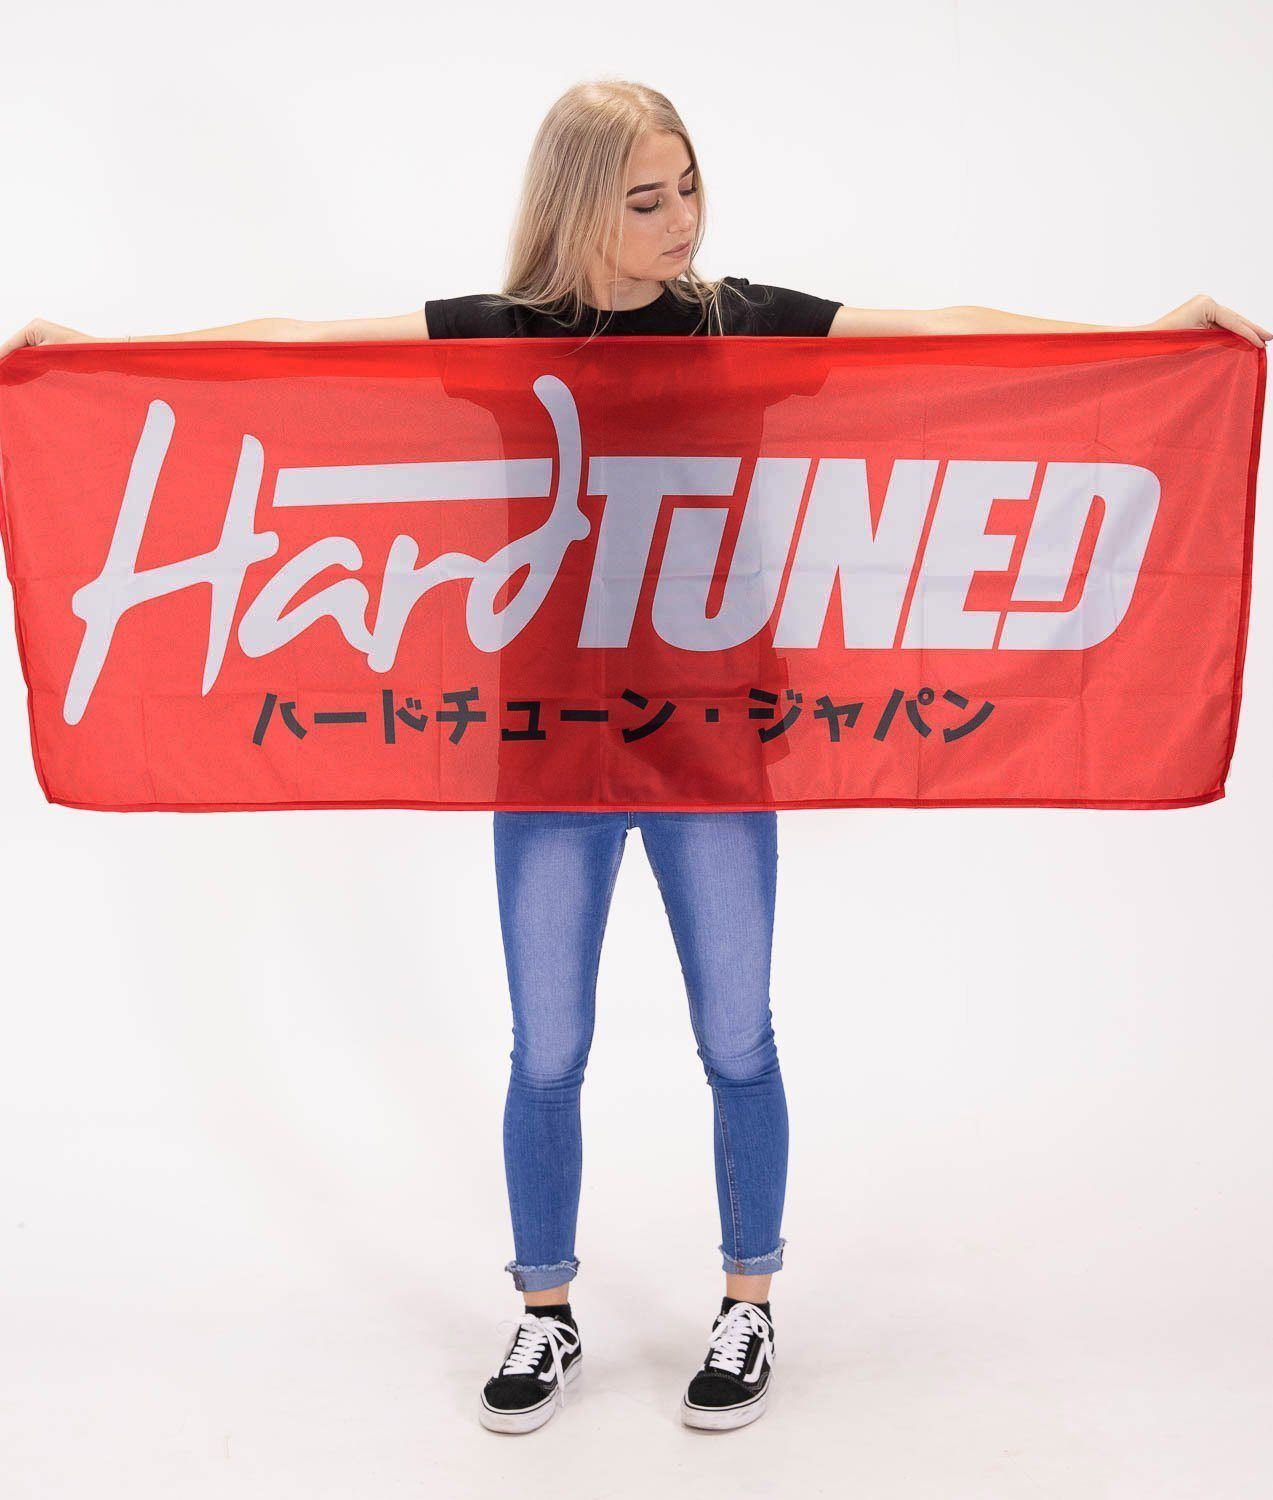 HardTuned Red Workshop Flag Banner - Hardtuned